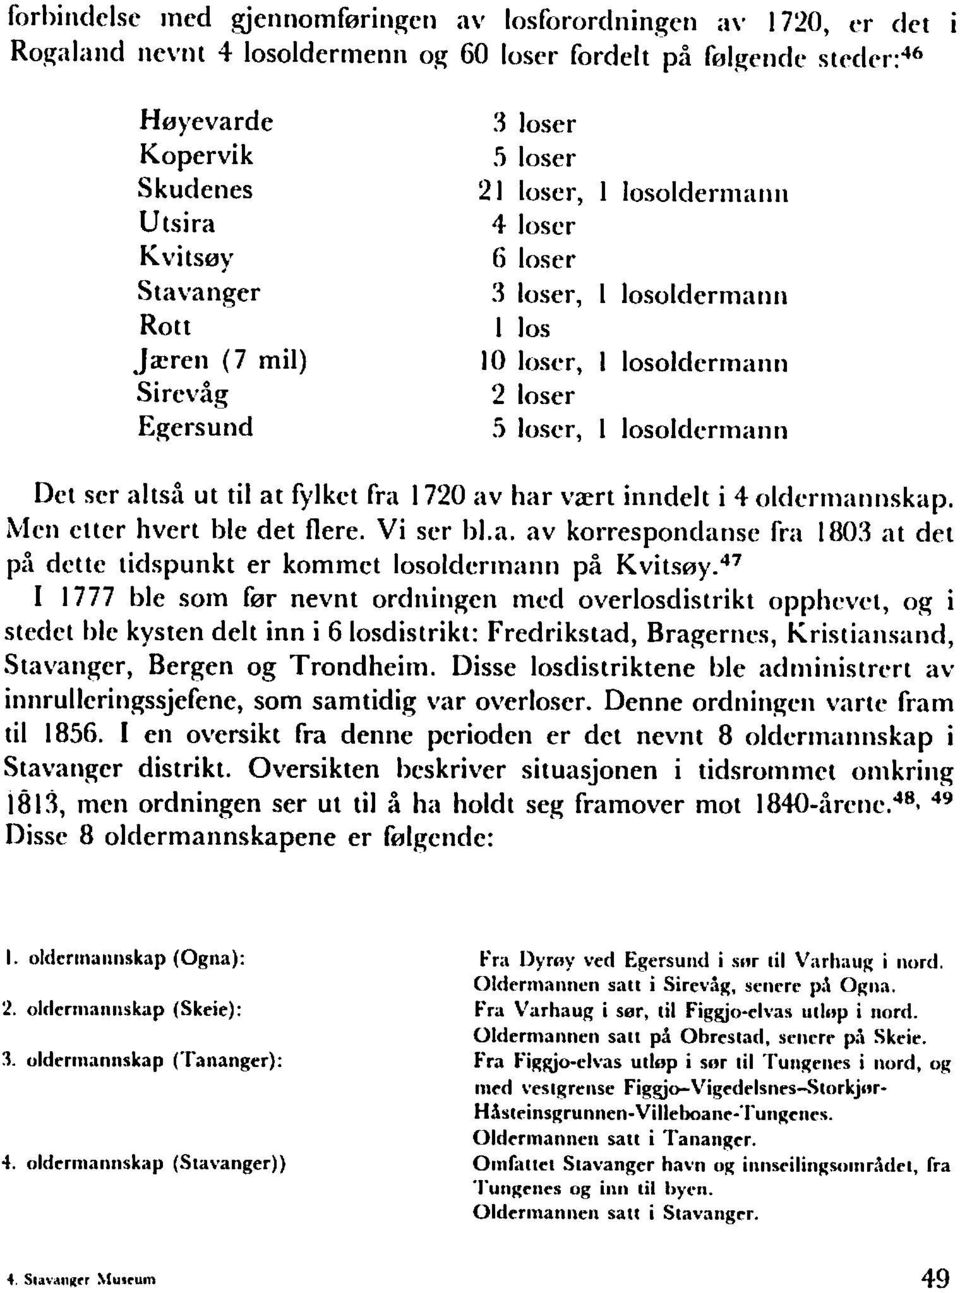 47 I 1777 ble som br nevnt ordningcn mcd overlosdistrikt opphcvct, og i stedct ble kysten delt inn i 6 losdistrikt: Fredrikstad, Bragernes, Kristiansand, Stavanger, Bergen og Trondheim.